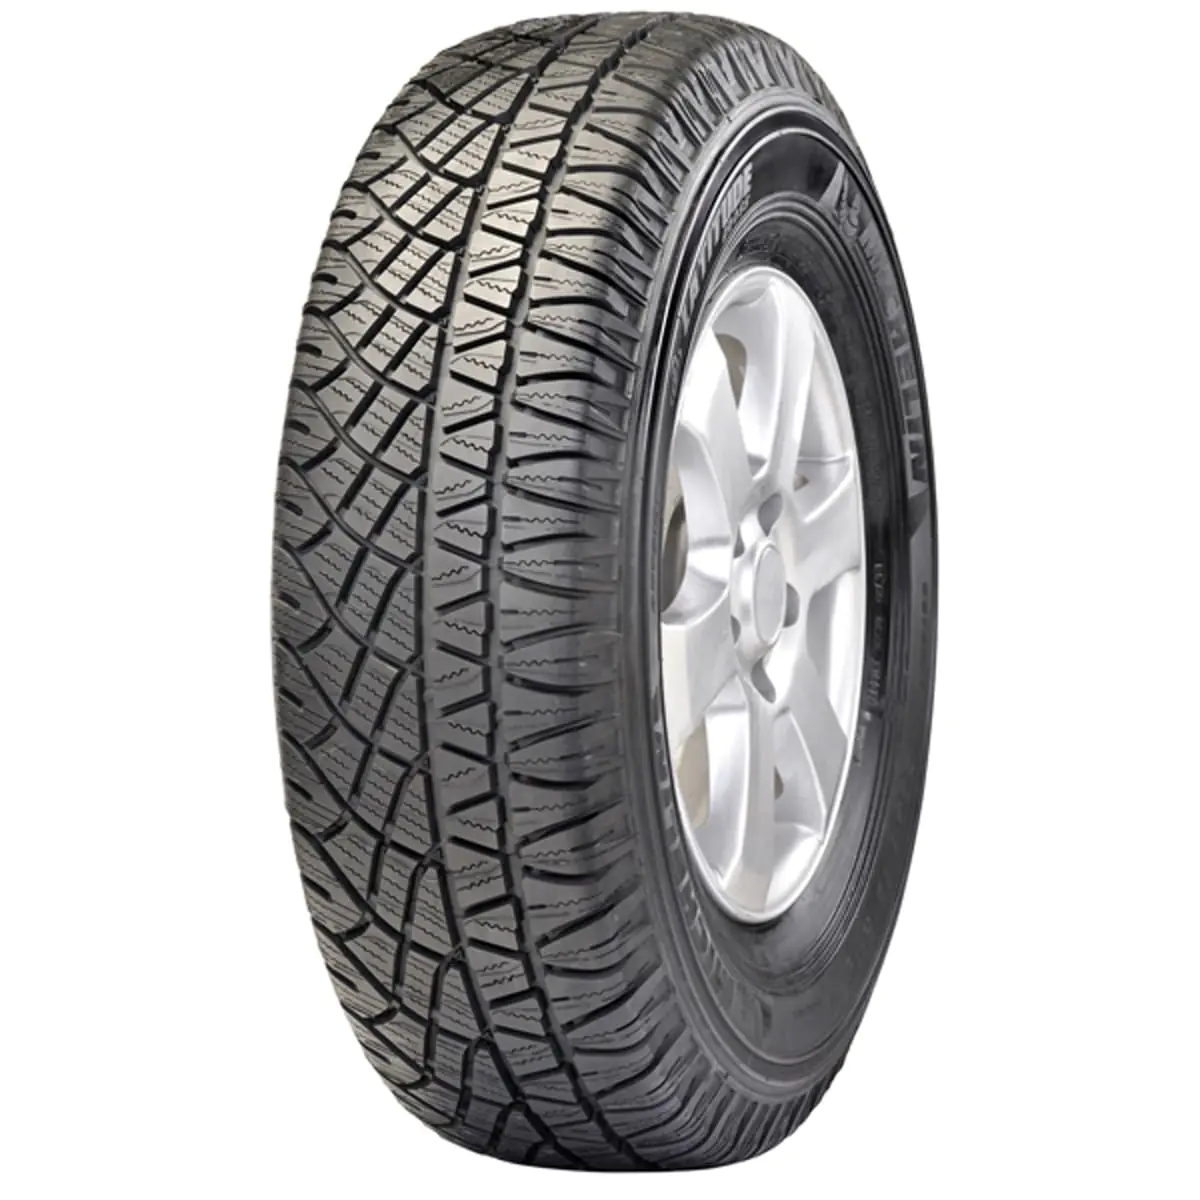 Michelin Michelin 255/70 R15 108H LATITUDE CROSS pneumatici nuovi Estivo 